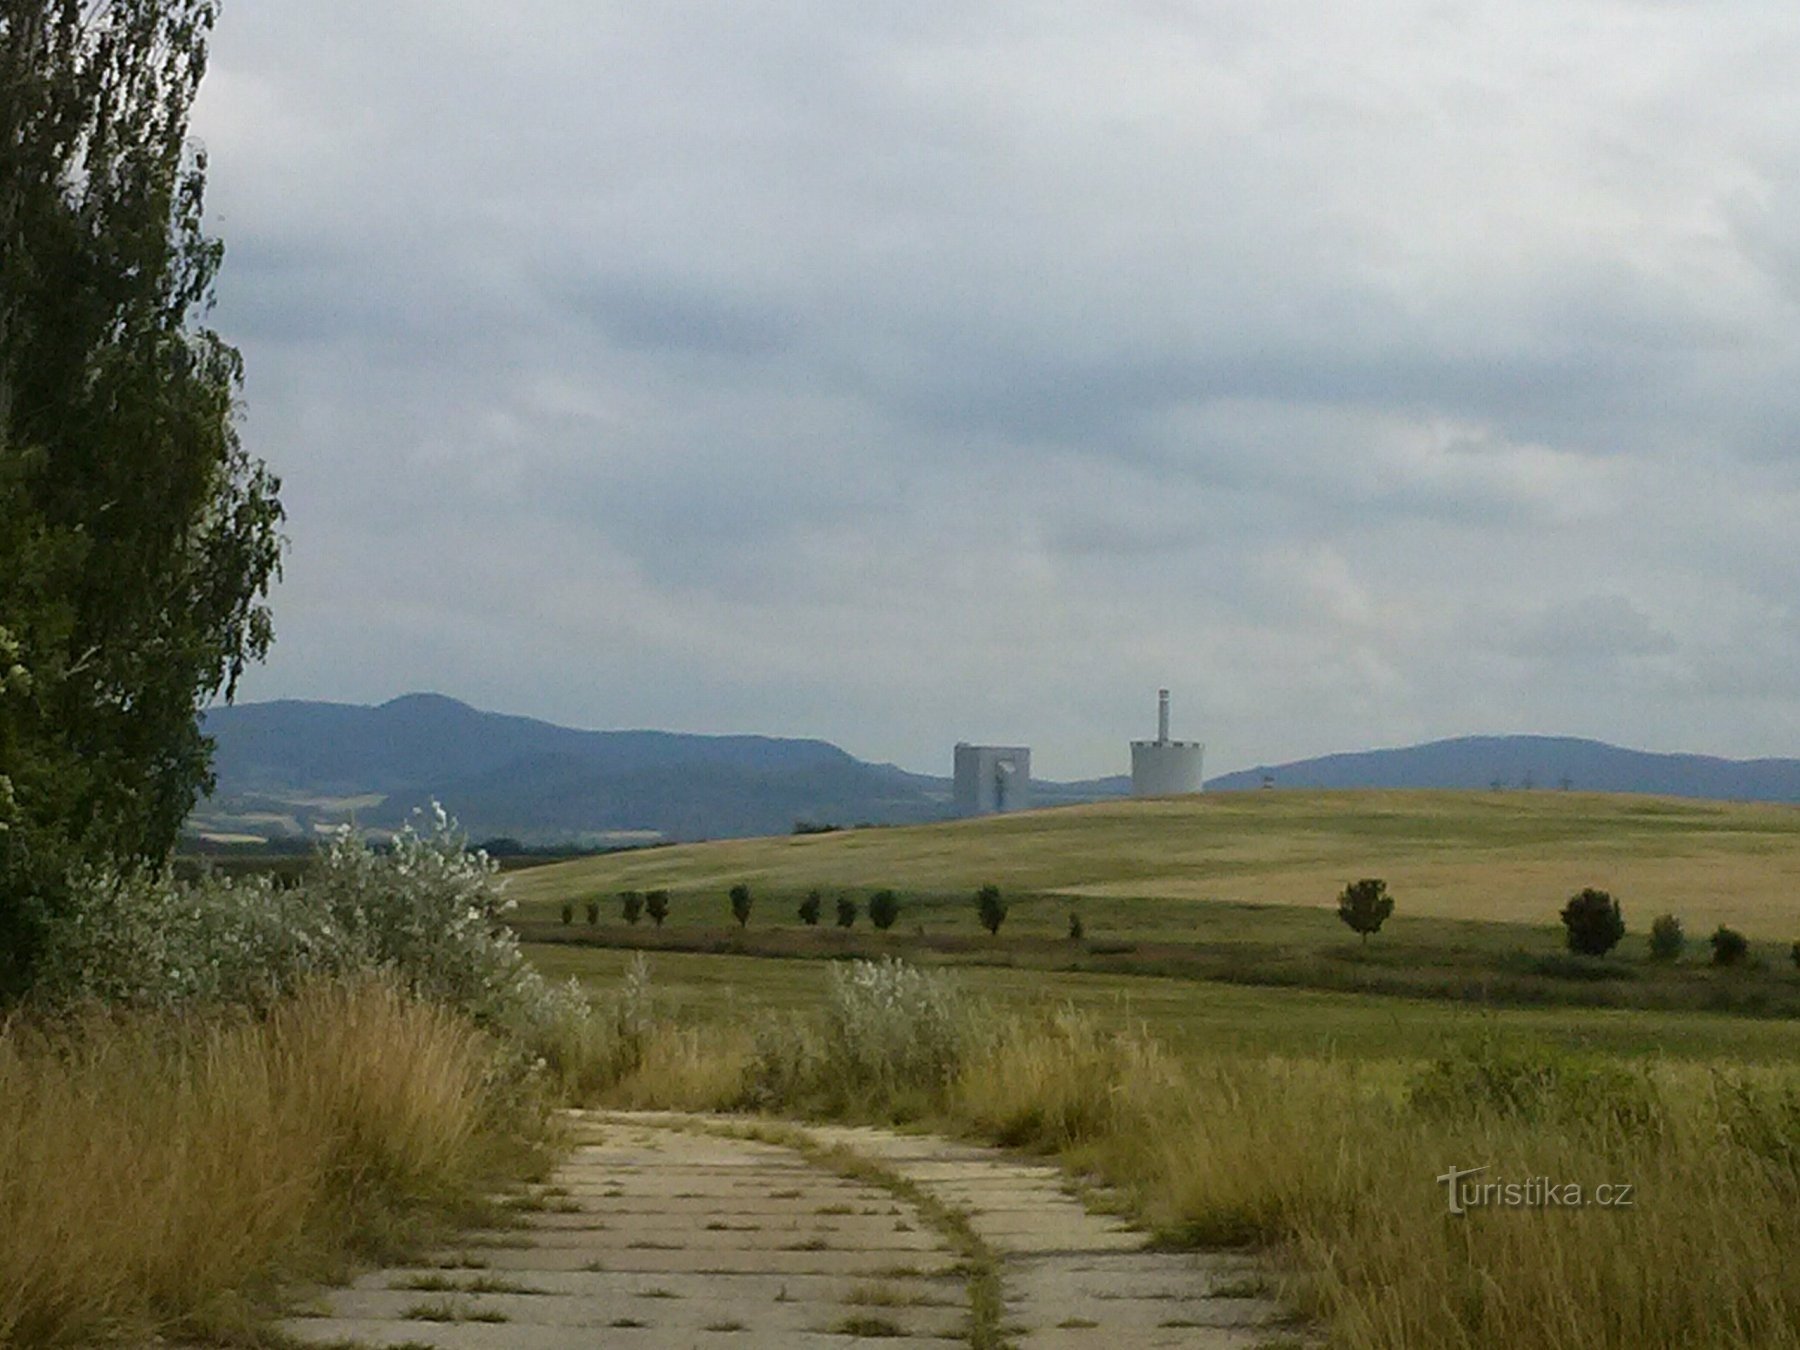 从风景中可以看到 Chotějovice 发电厂的塔楼